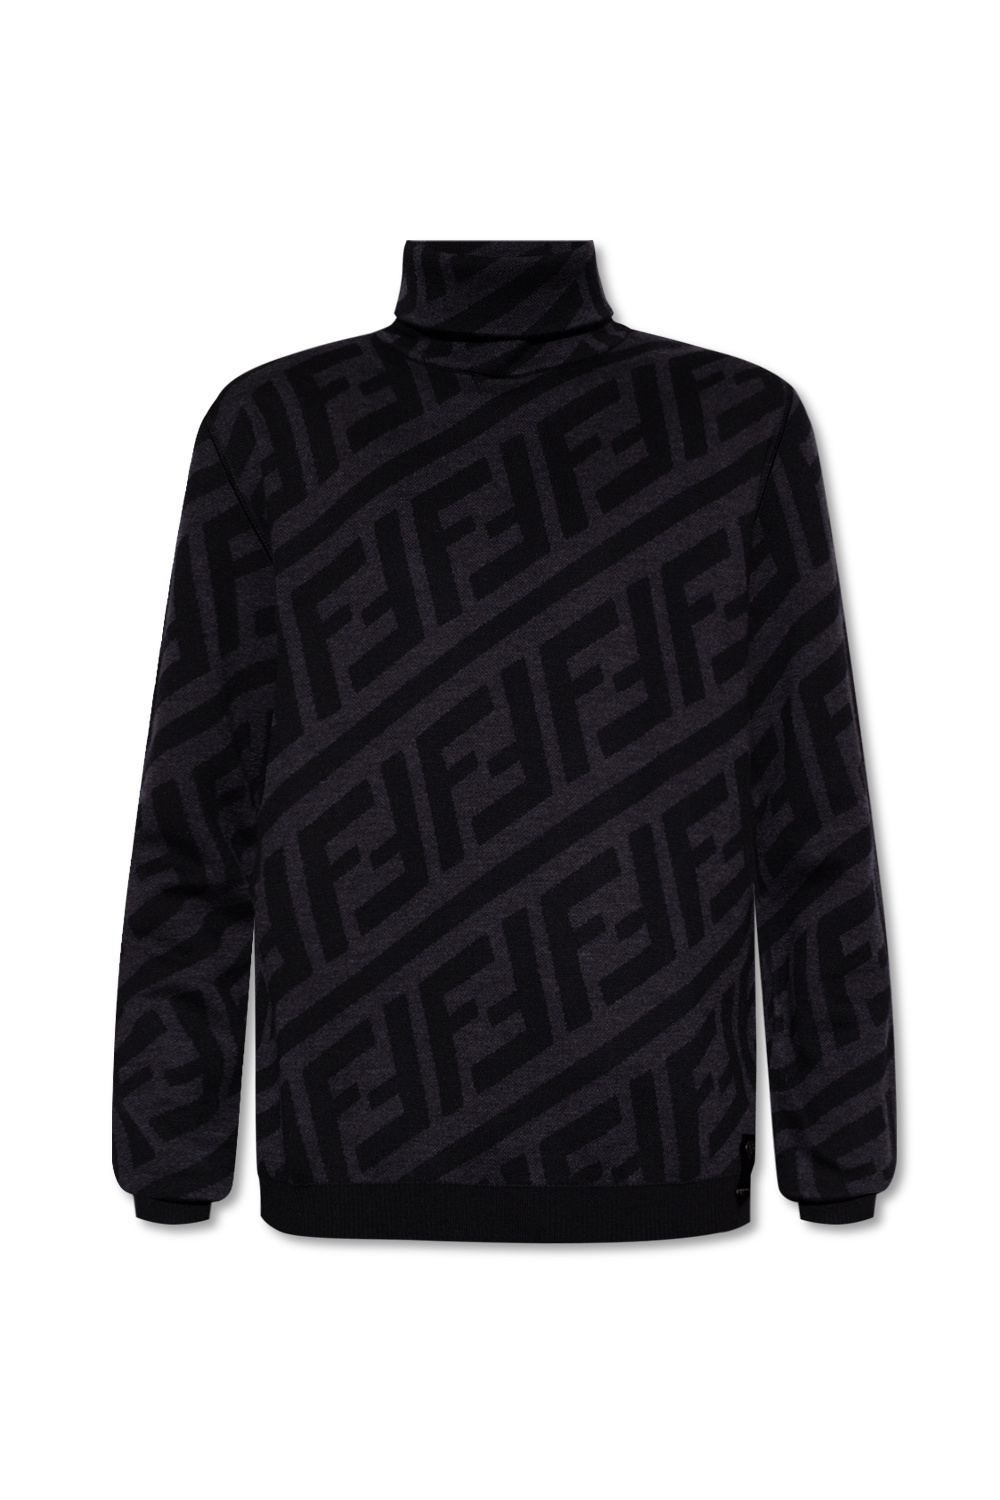 Fendi Light Brown Wool Knit Logo Monogram Turtleneck Sweater M